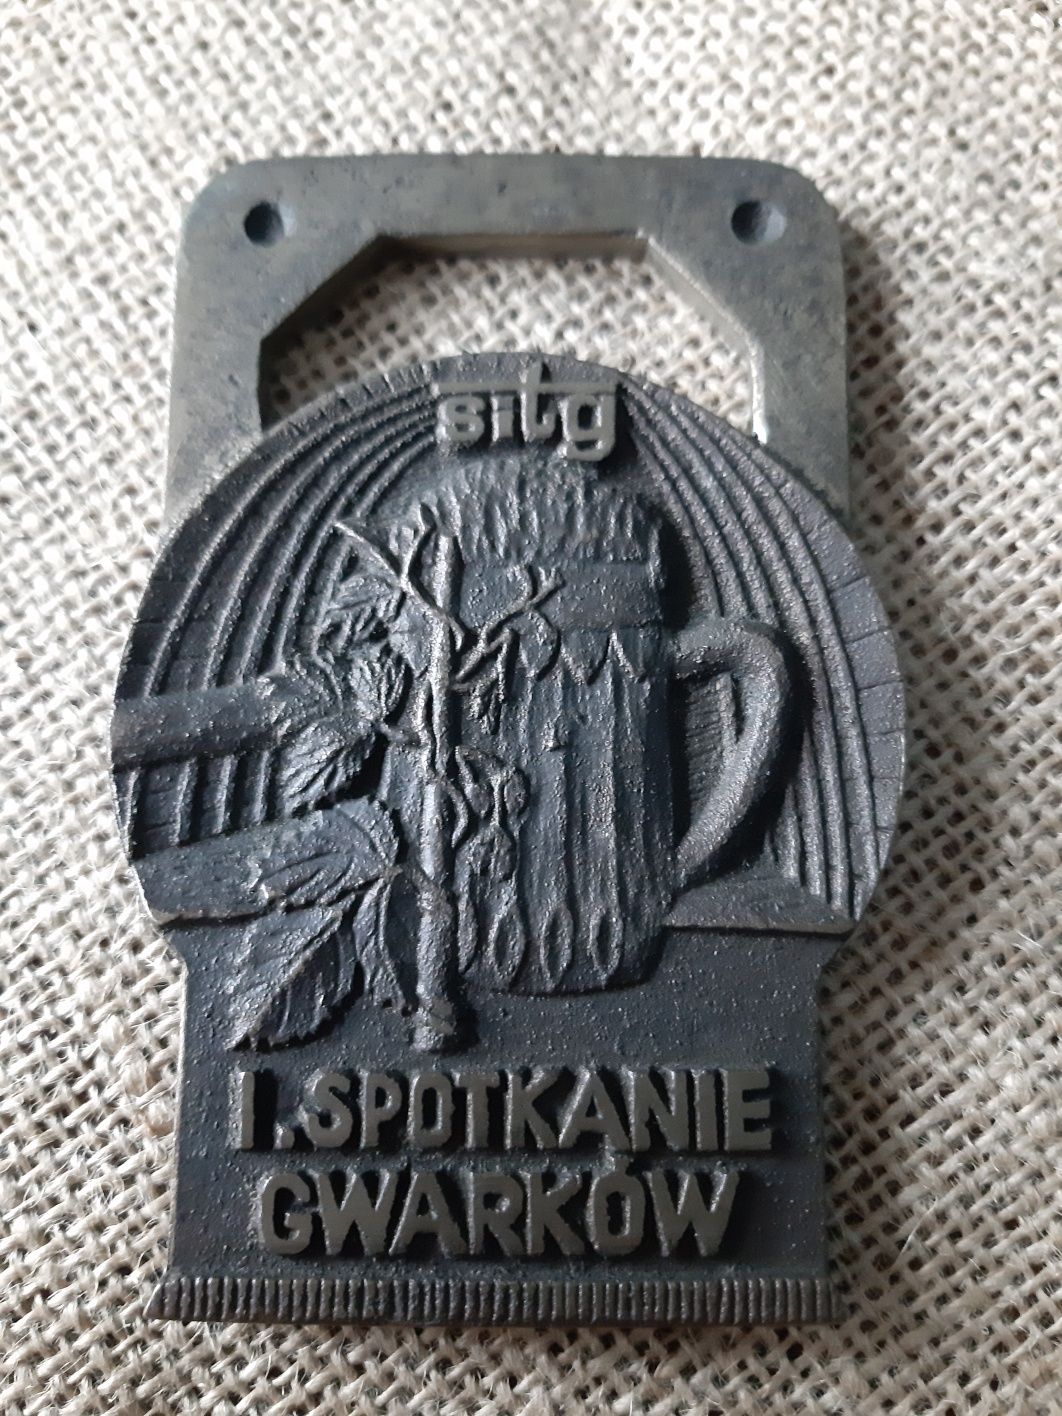 KWK Morcinek.Spotkanie Gwarków.Medal, odlew.SITG.1986.